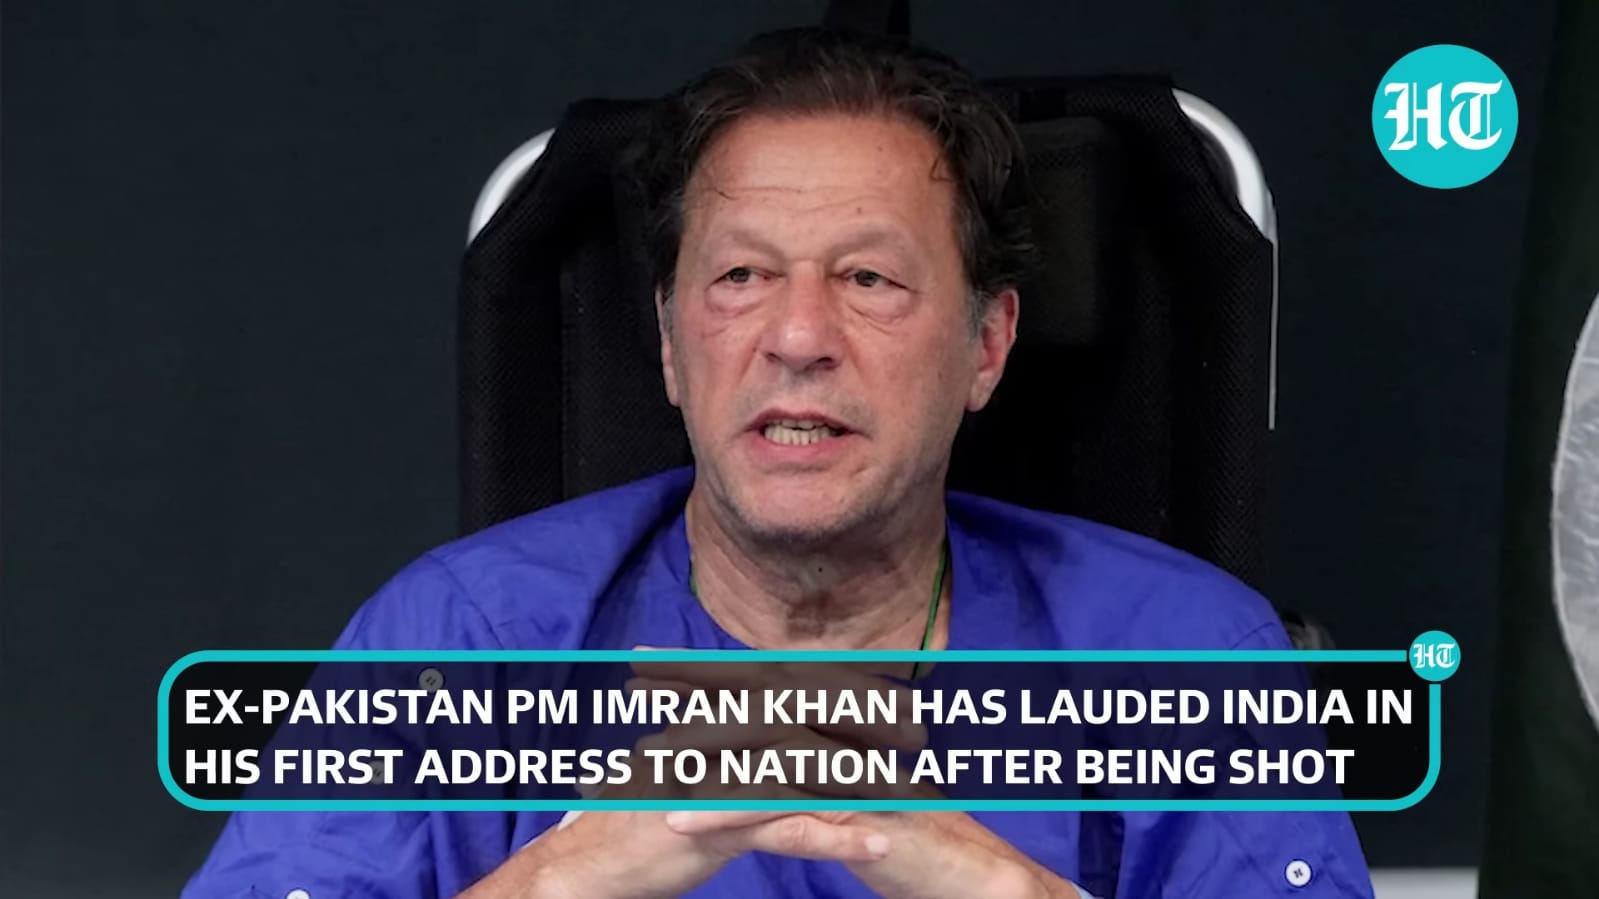 عمران خان کی فوج پر تنقید، الزام تراشی بھارتی میڈیا کا پسندیدہ موضوع ہے۔